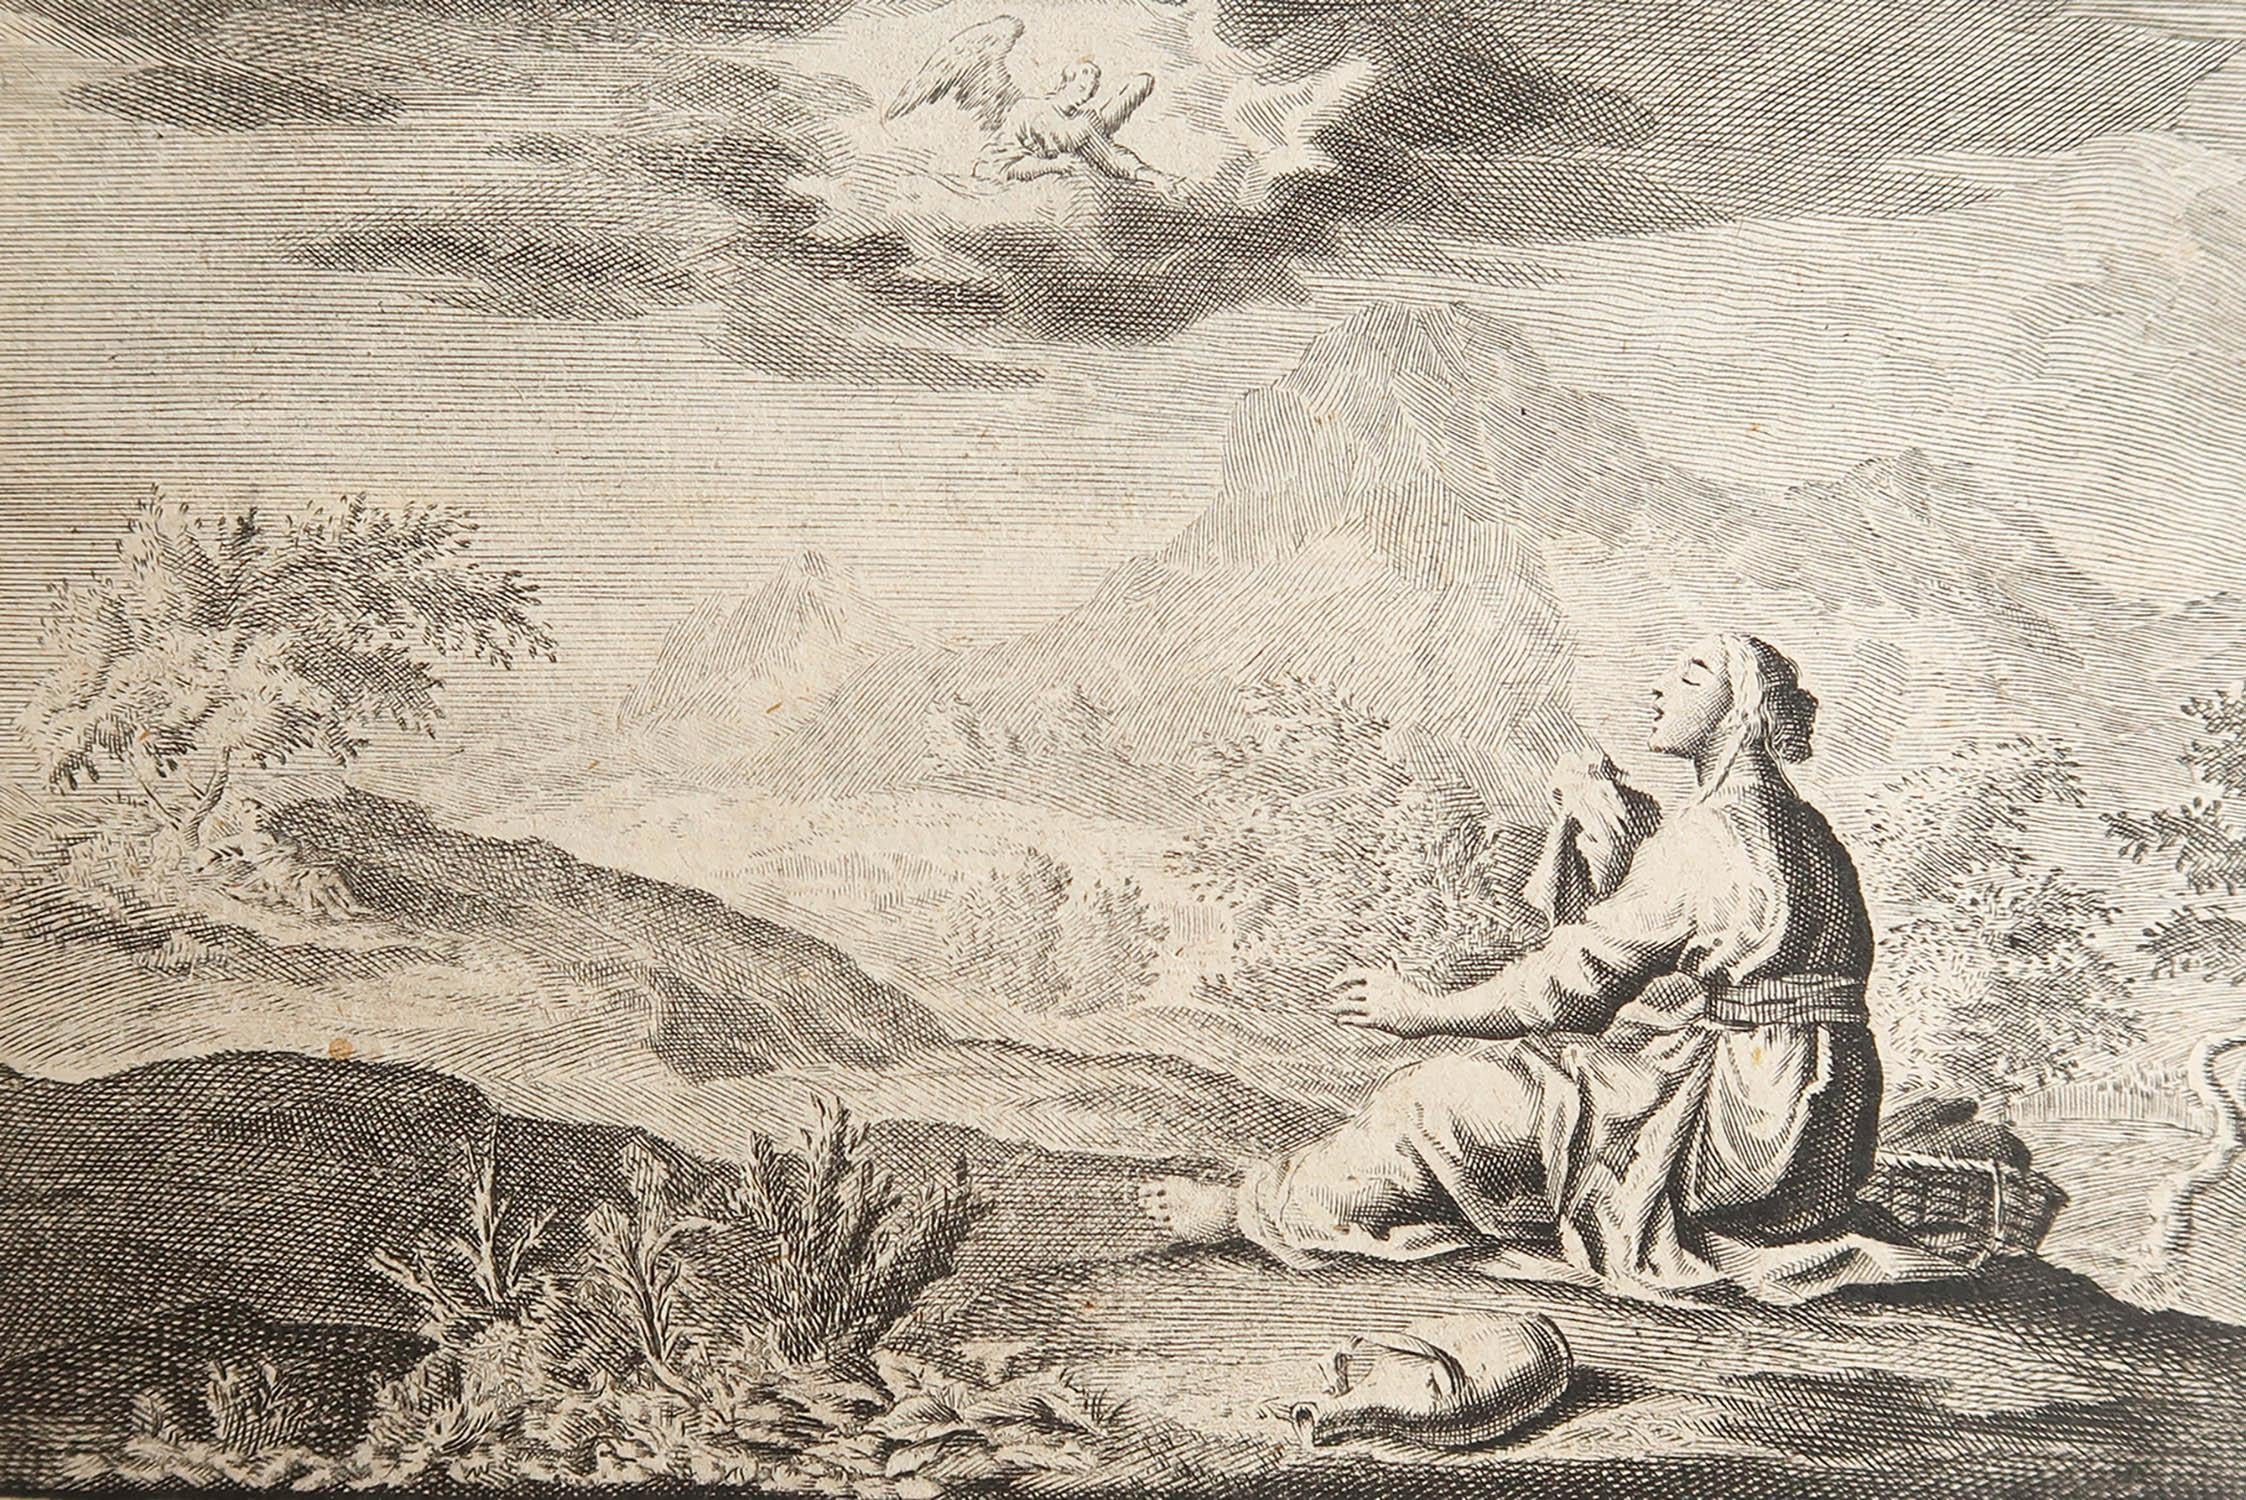 Magnifique gravure sur cuivre d'après Jan Luyken

Publié par Marten Schagen, Amsterdam. 1724

Texte au verso

La mesure indiquée correspond au format du papier




